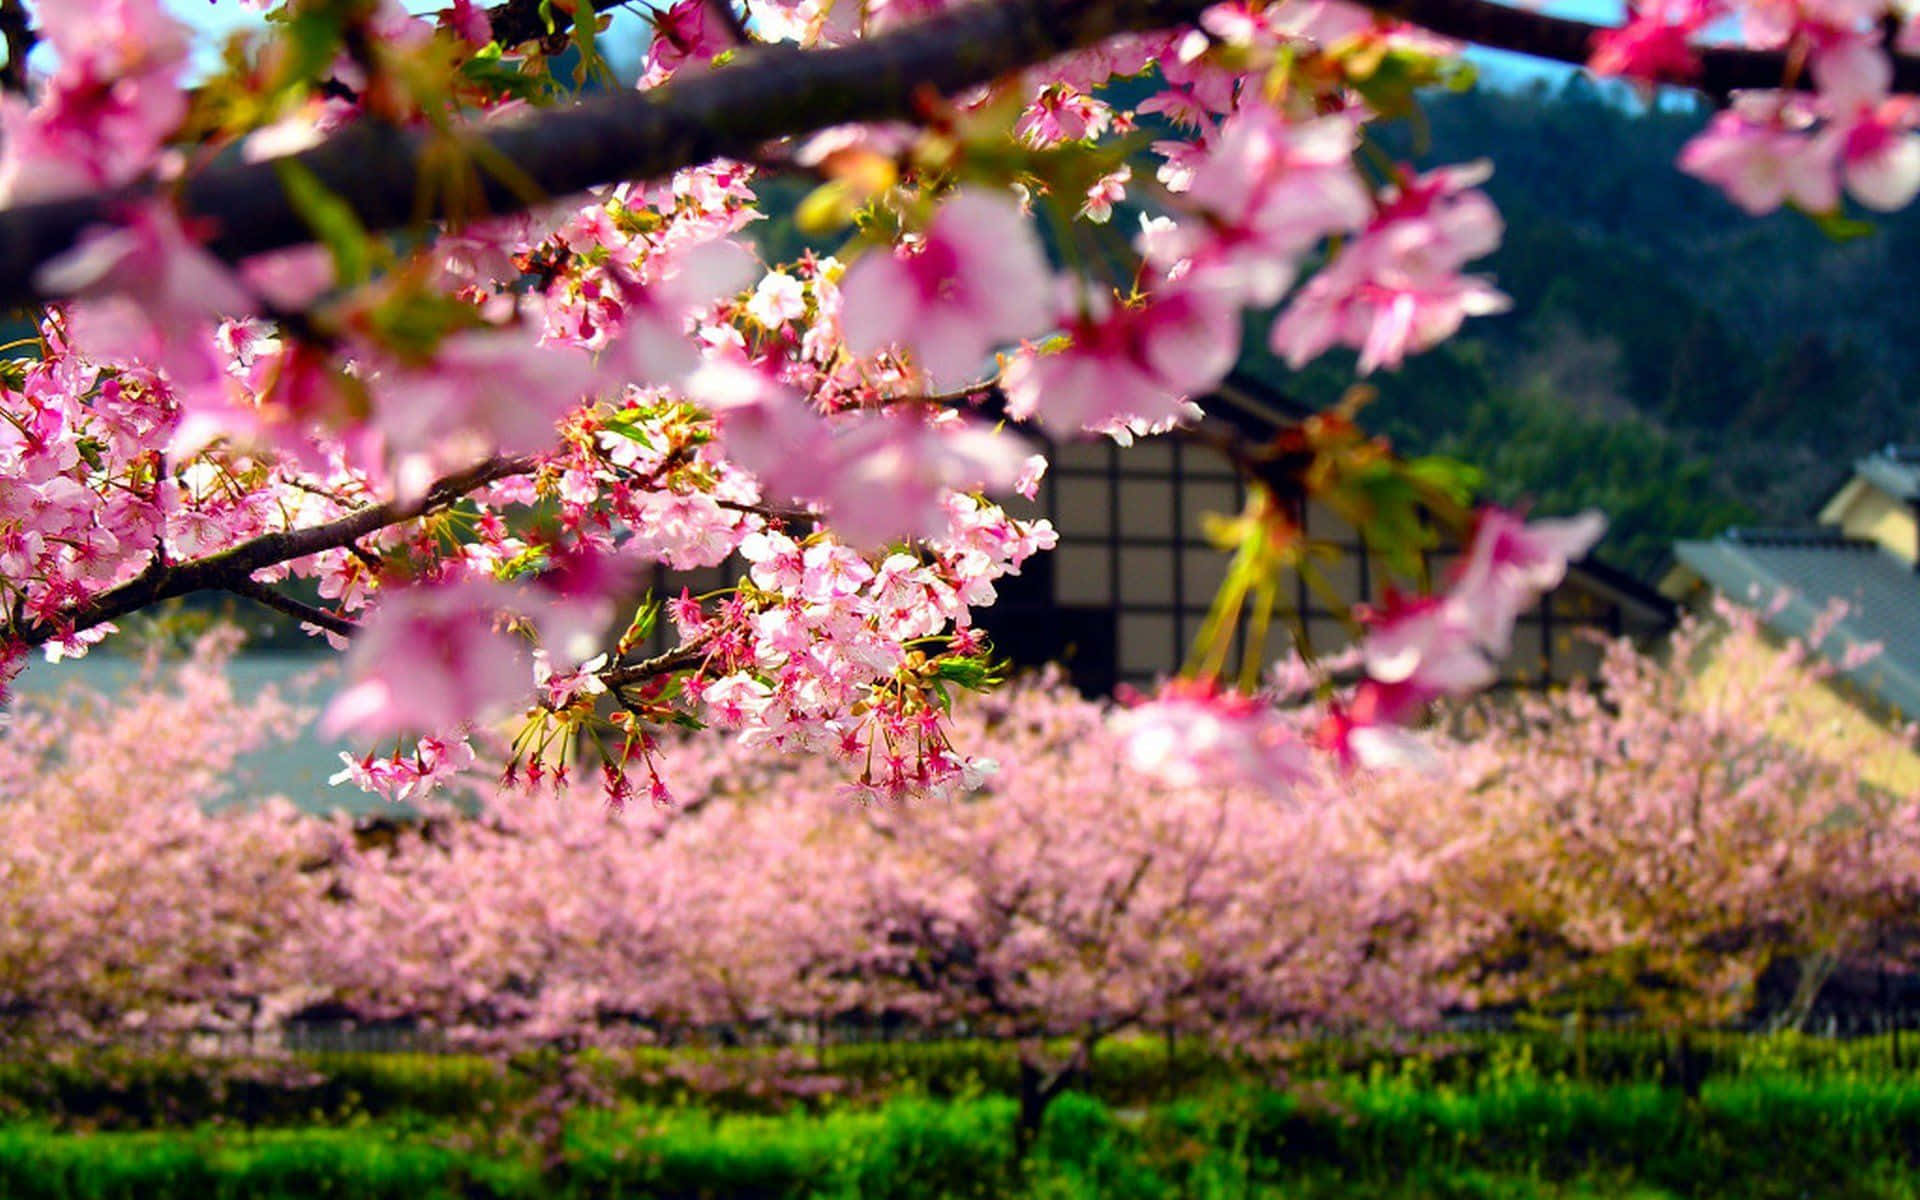 Smuktbaggrundsbillede Af En Japansk Kirsebærblomstrende Forårstræ.